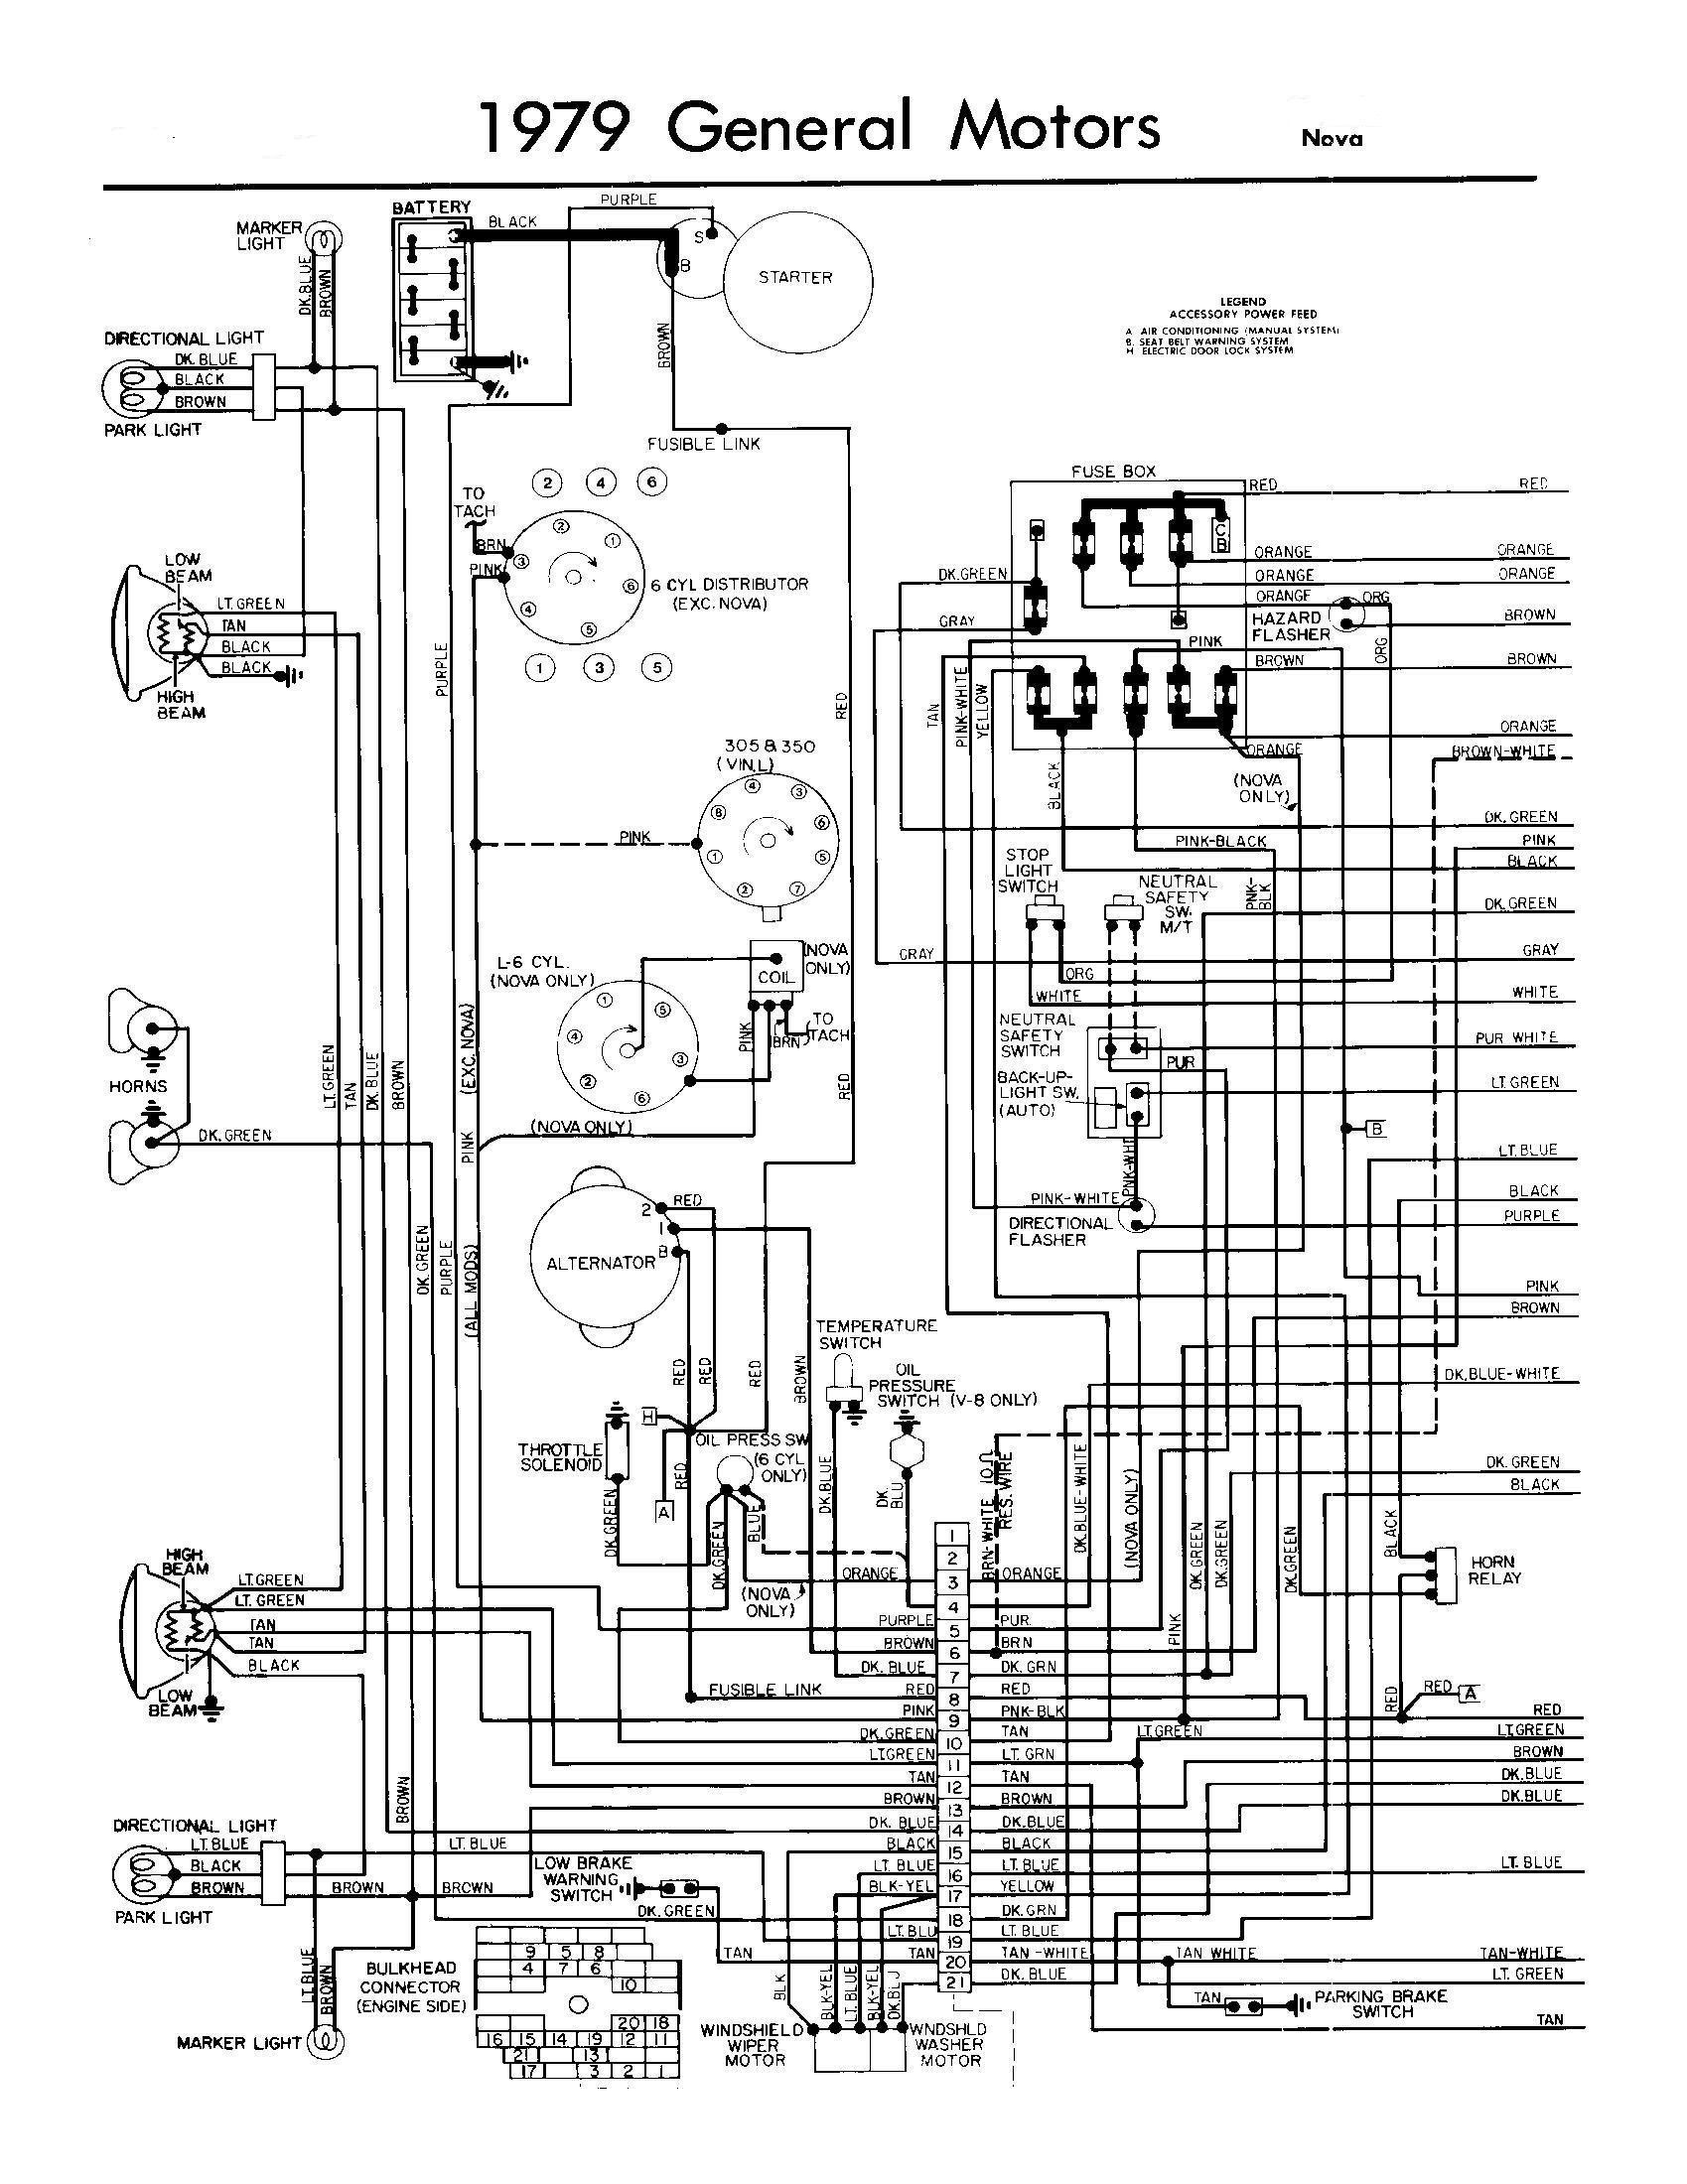 1979 Chevy Truck Wiring Diagram All Generation Wiring Schematics Chevy Nova forum Of 1979 Chevy Truck Wiring Diagram